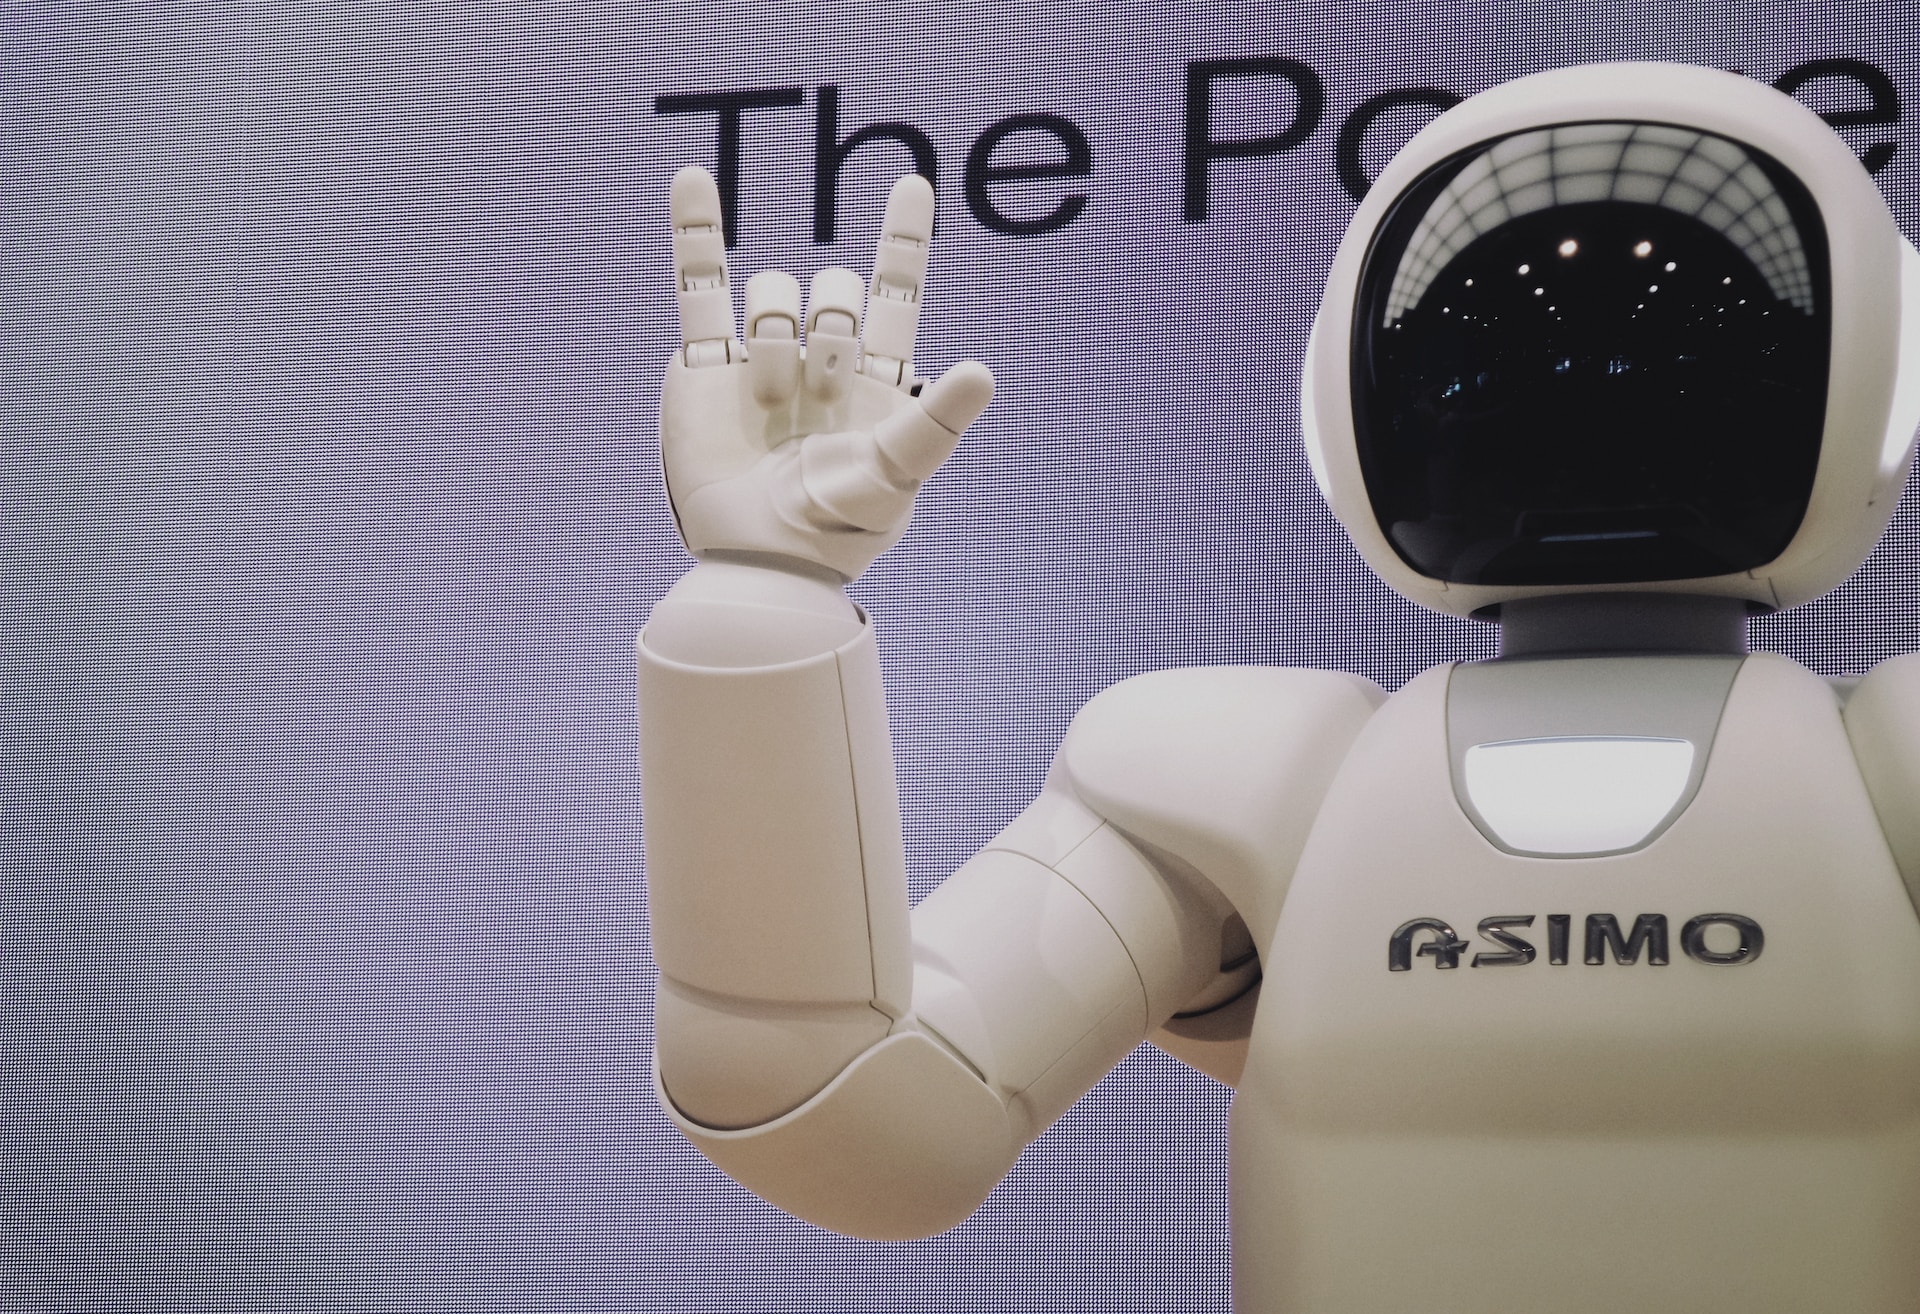 honda's humanoid robot asimo waving